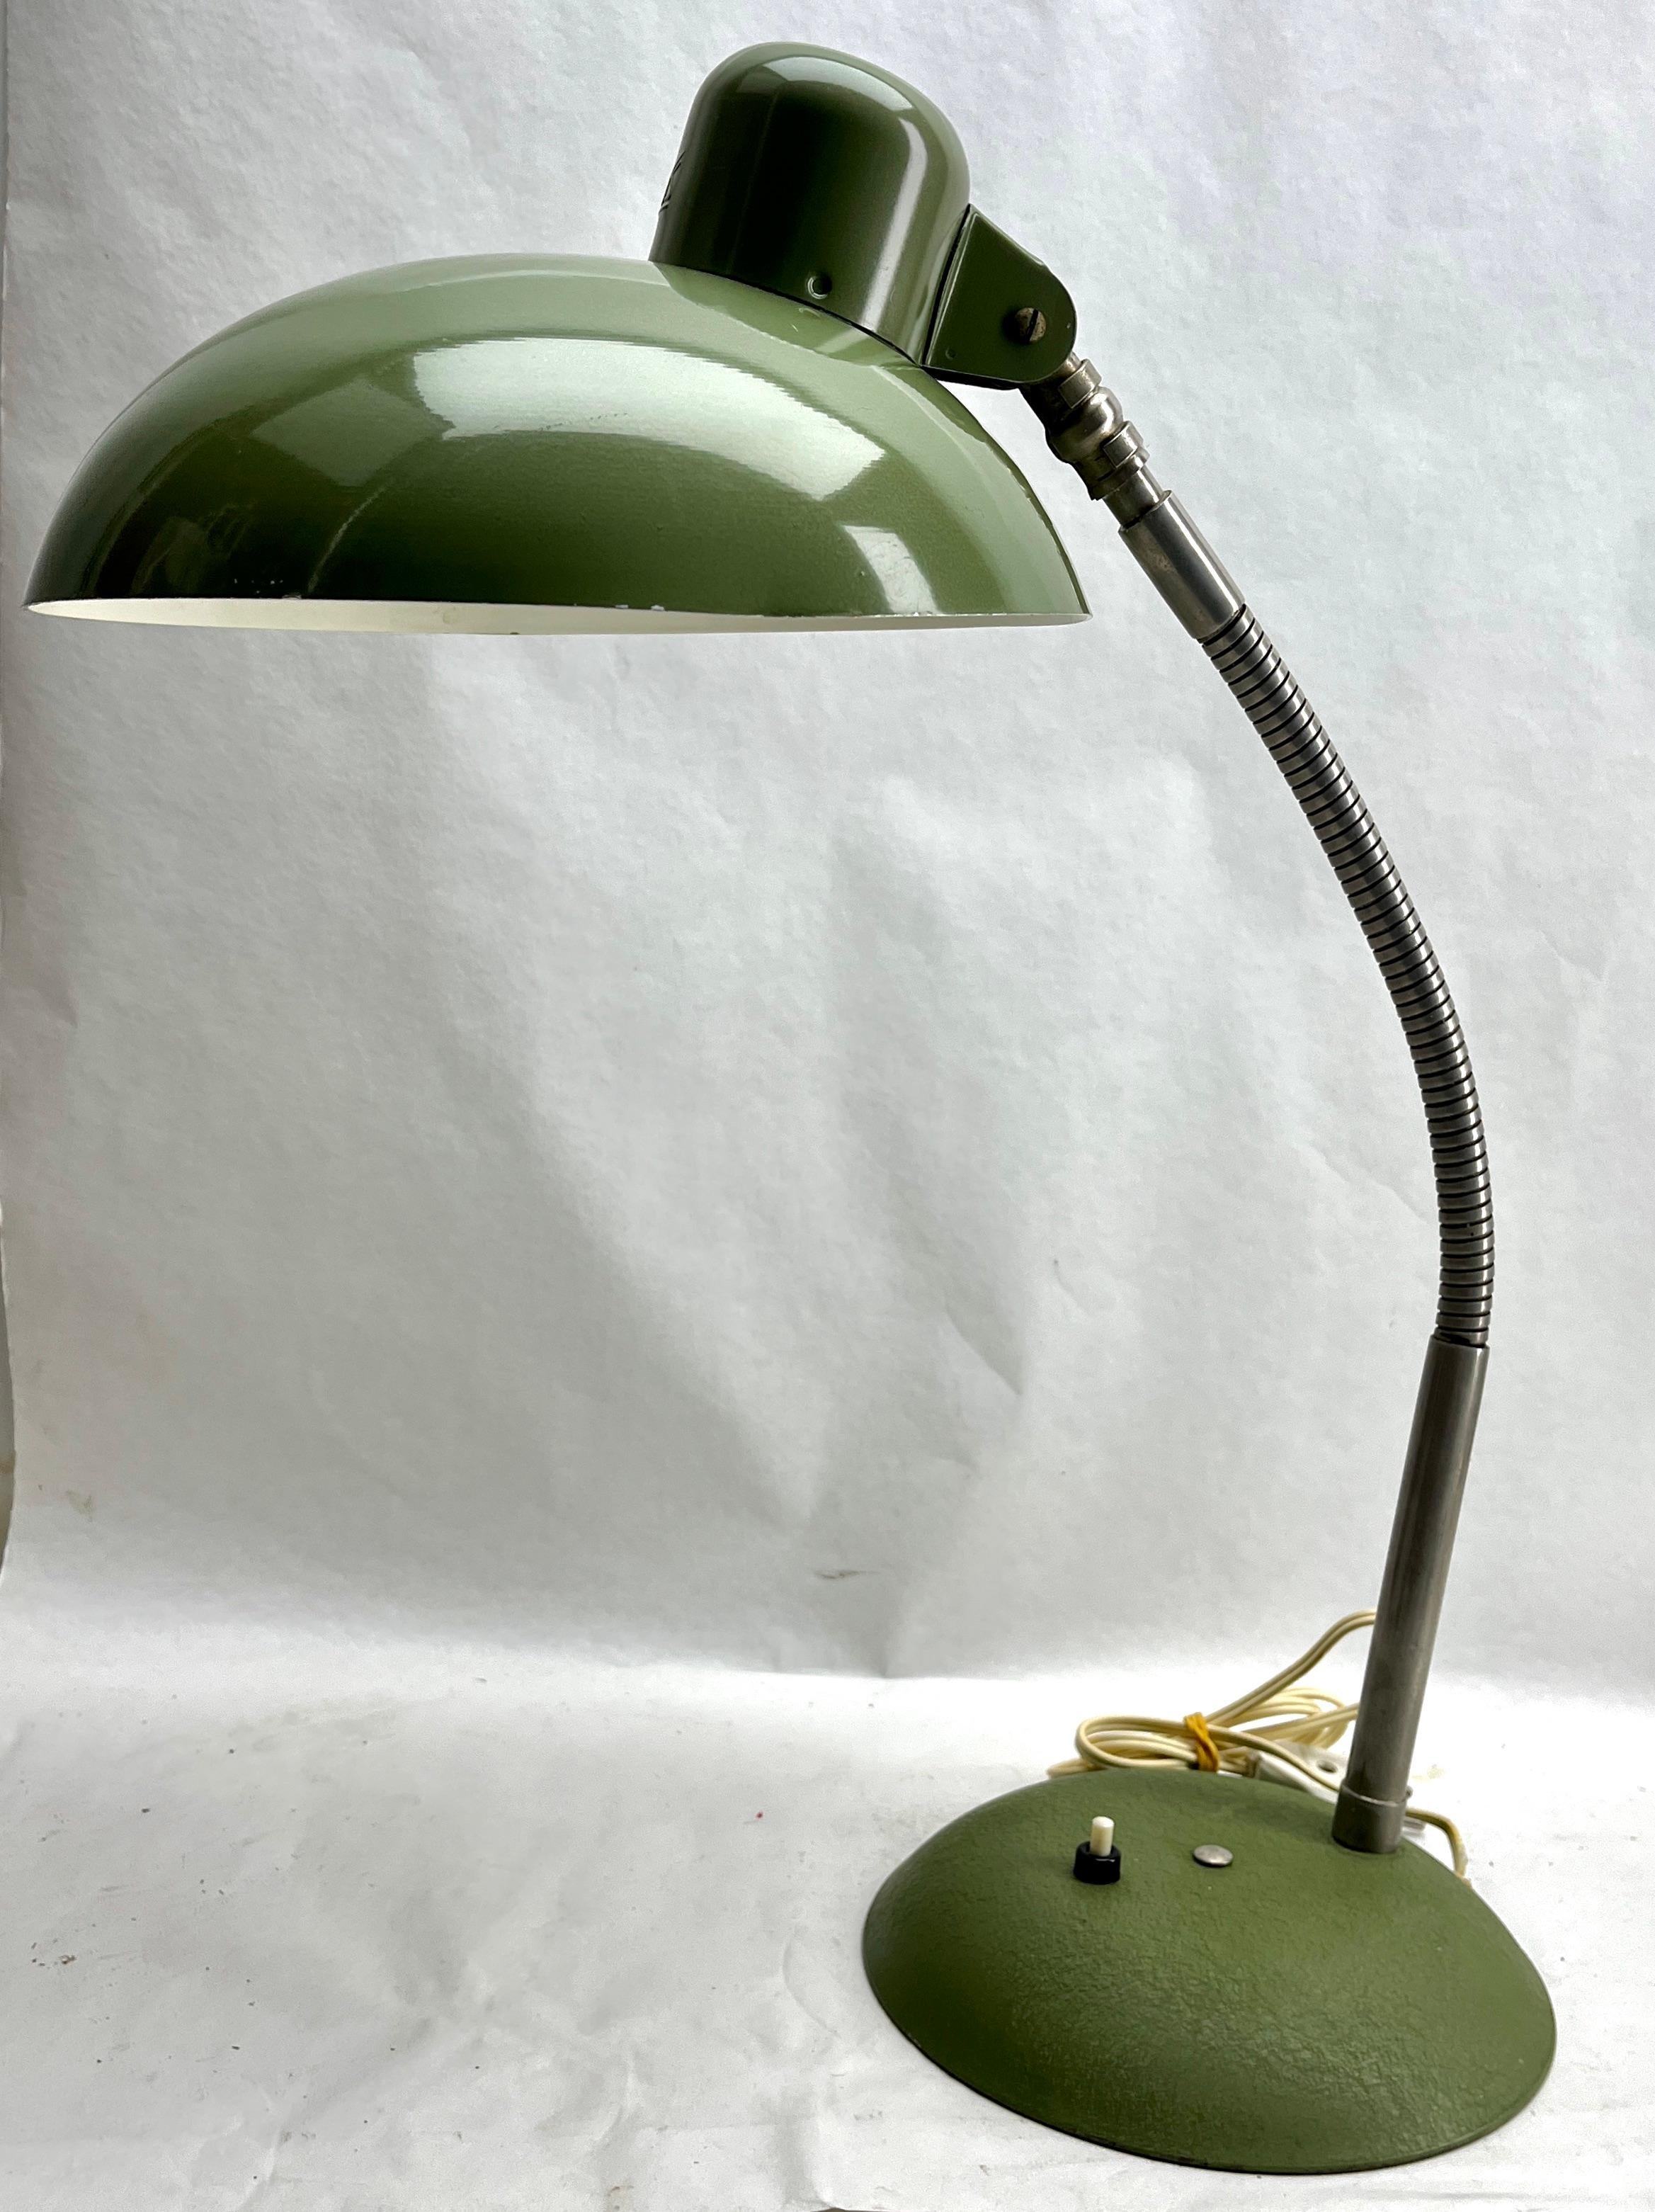 Design/One classique et compact, cette lampe de bureau à spot réglable a été produite par SIS, Allemagne, dans les années 1950.
Le pied est en métal et le bras flexible a une patine chromée, la lampe est en bon état.

La photographie ne parvient pas